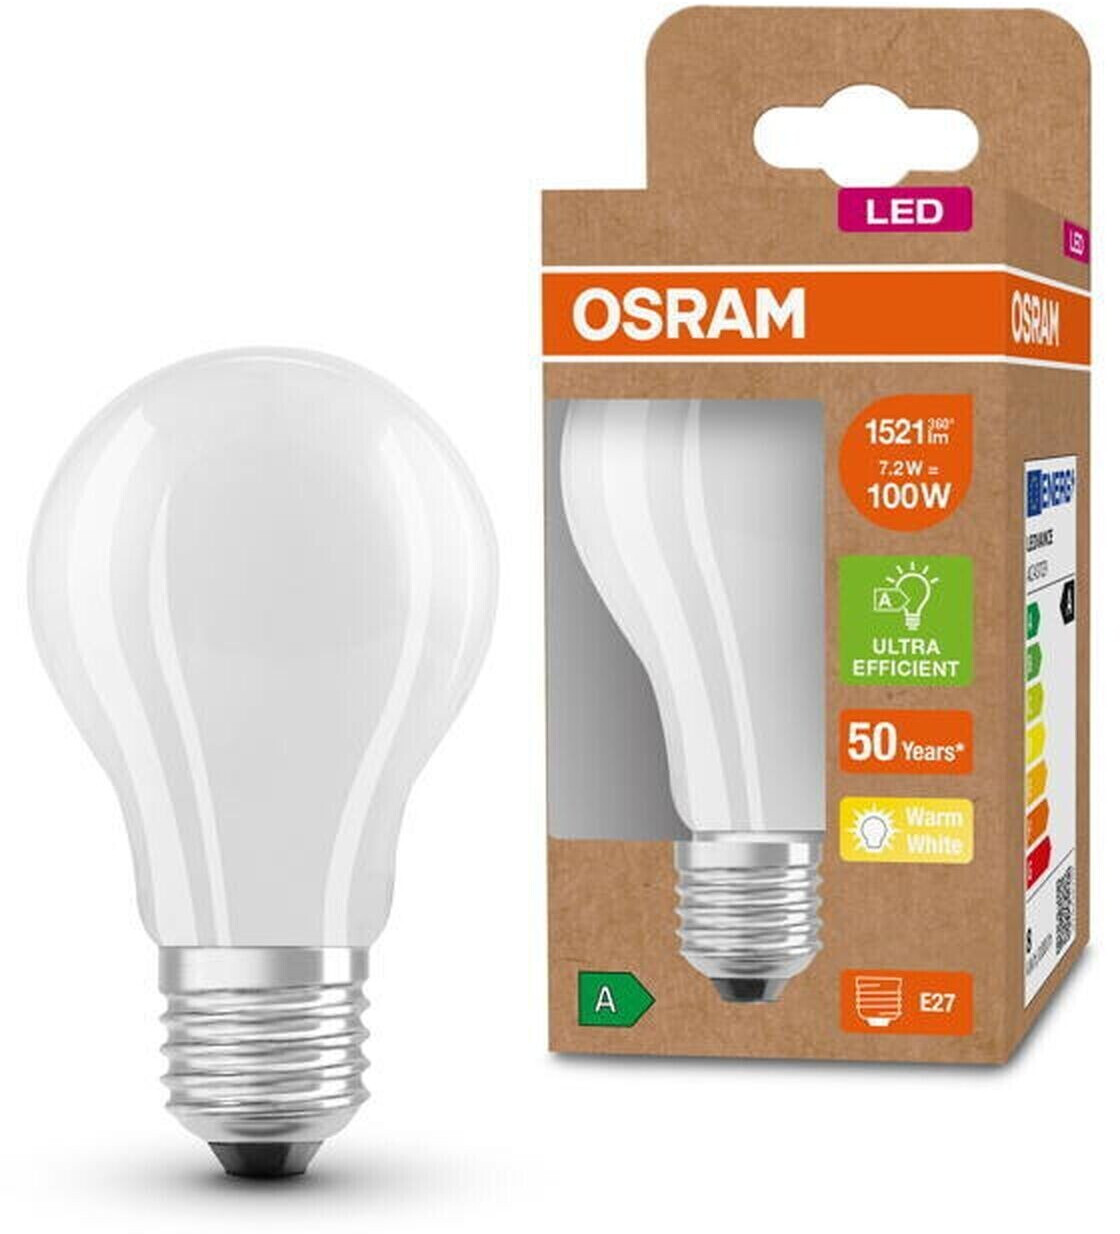 Osram LED Classic A E27 7,2W/1521lm 3000K (AC43729) ab 9,48 €